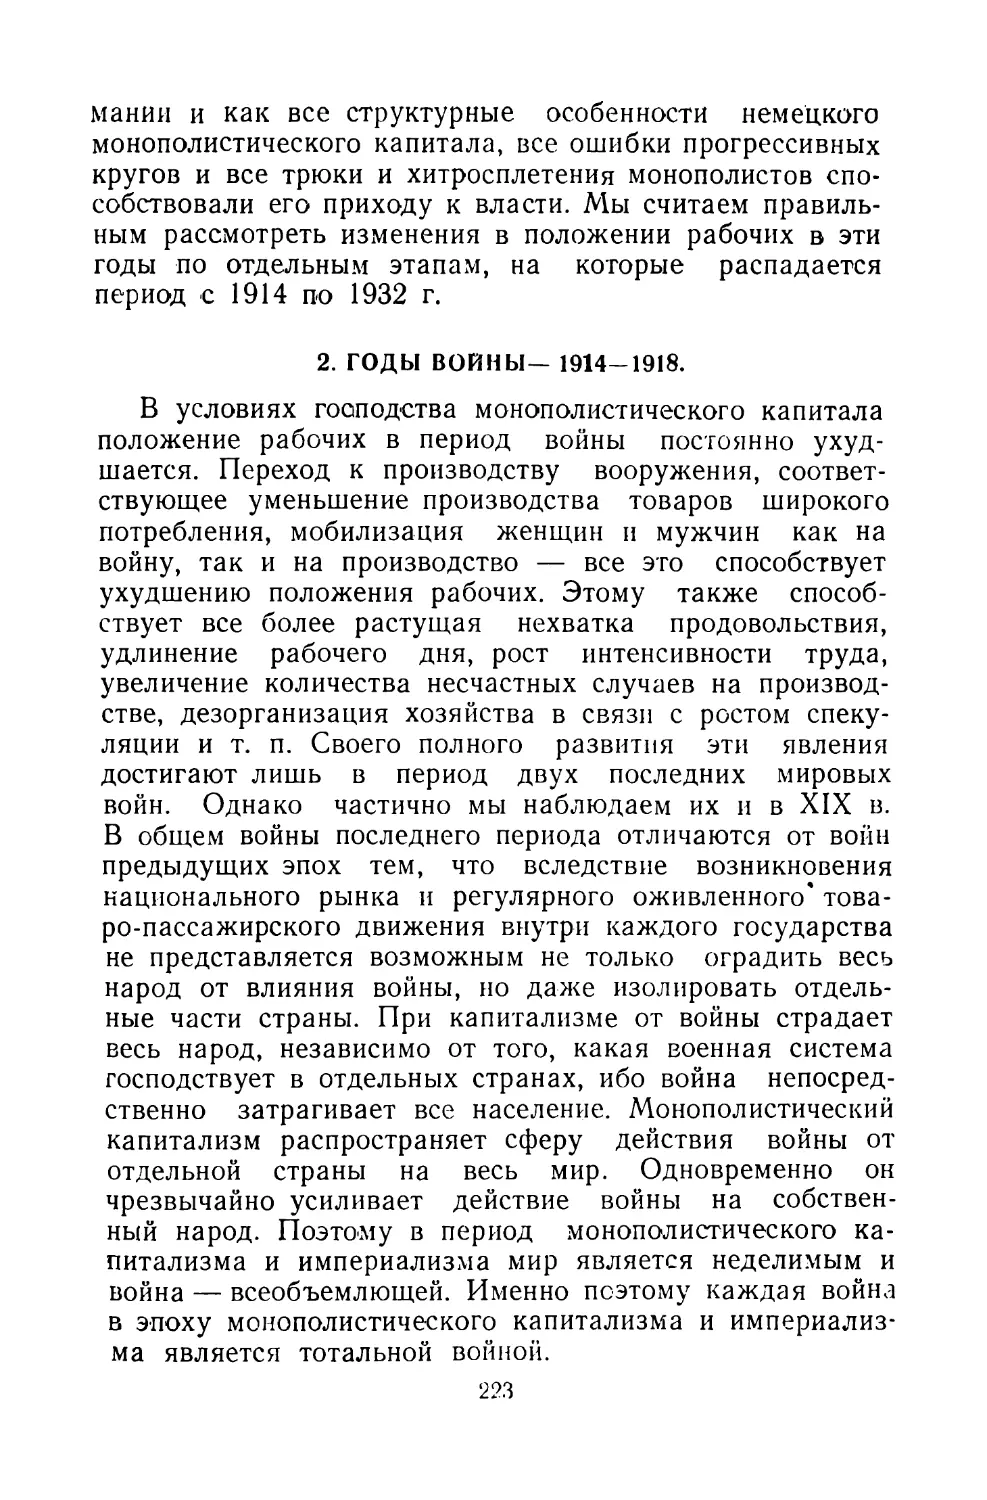 2. ГОДЫ ВОЙНЫ — 1914-1918.